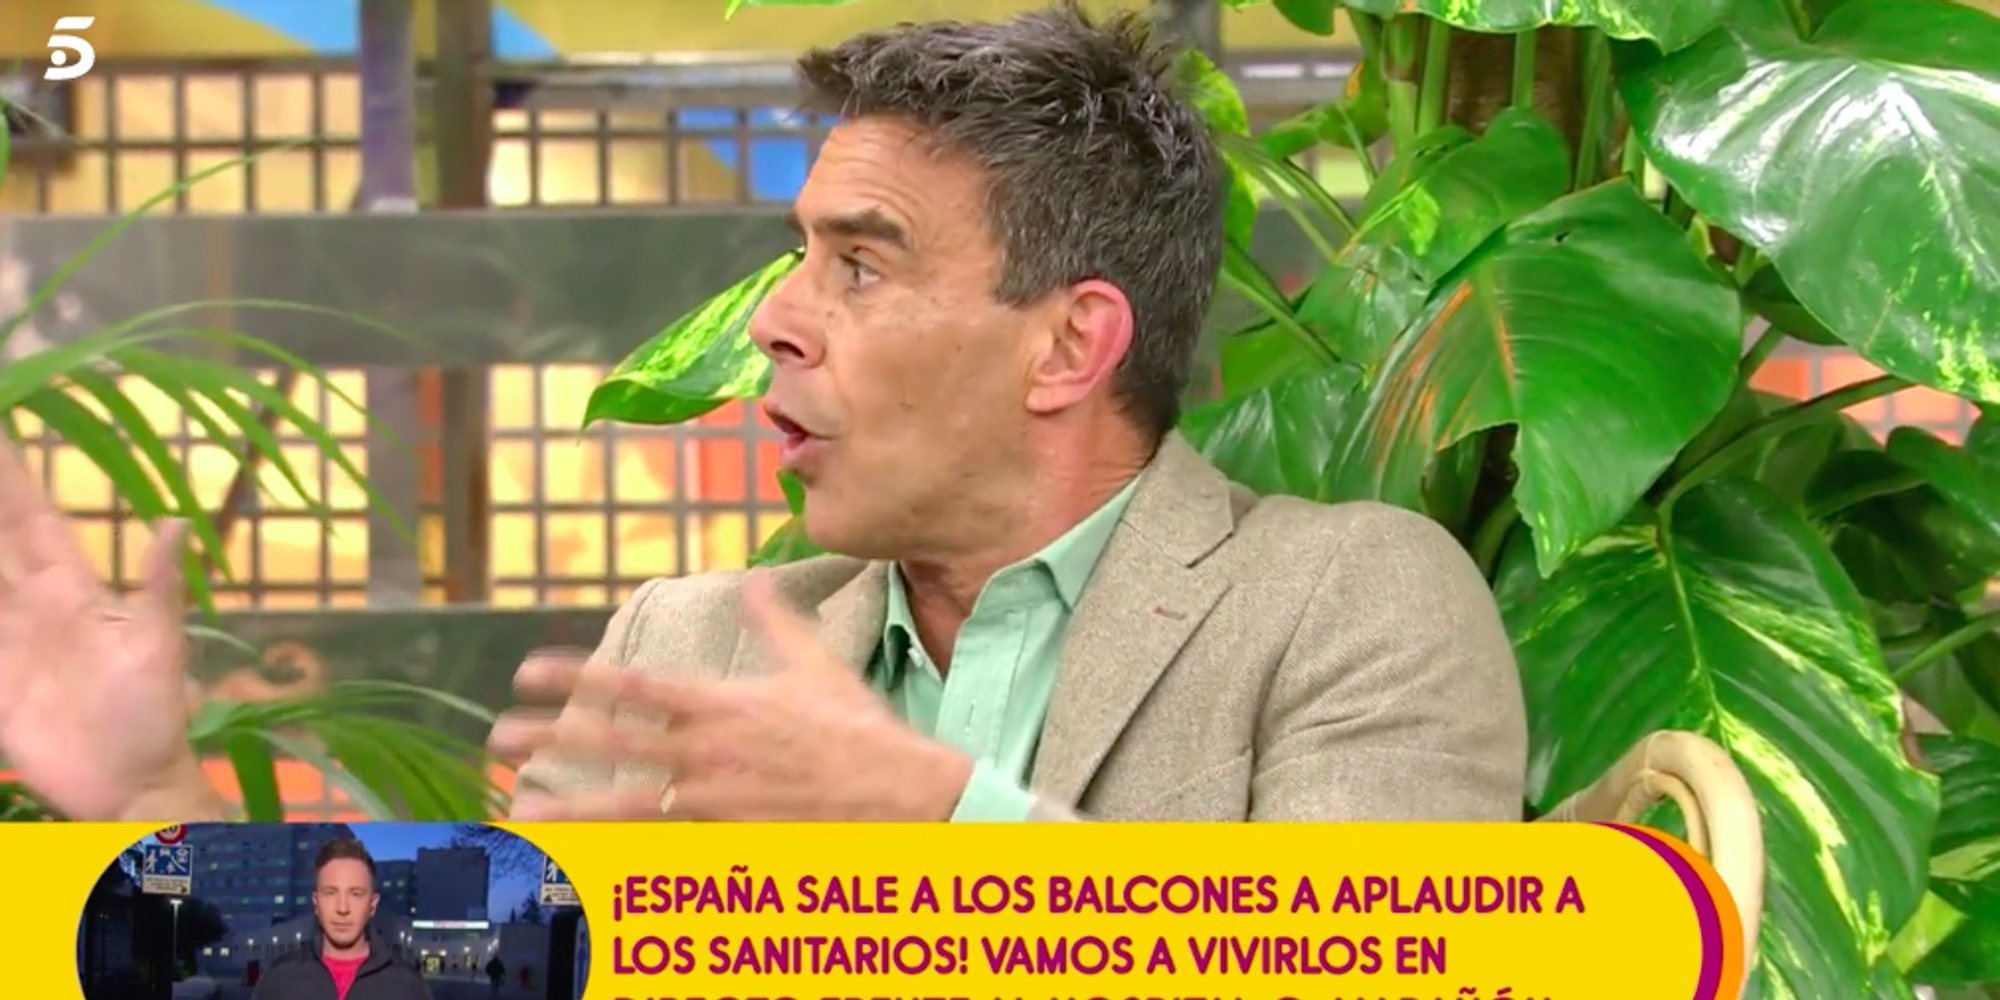 Alonso Caparrós arremete contra Antonio David: "Me alucinan los malos pensamientos que albergas"